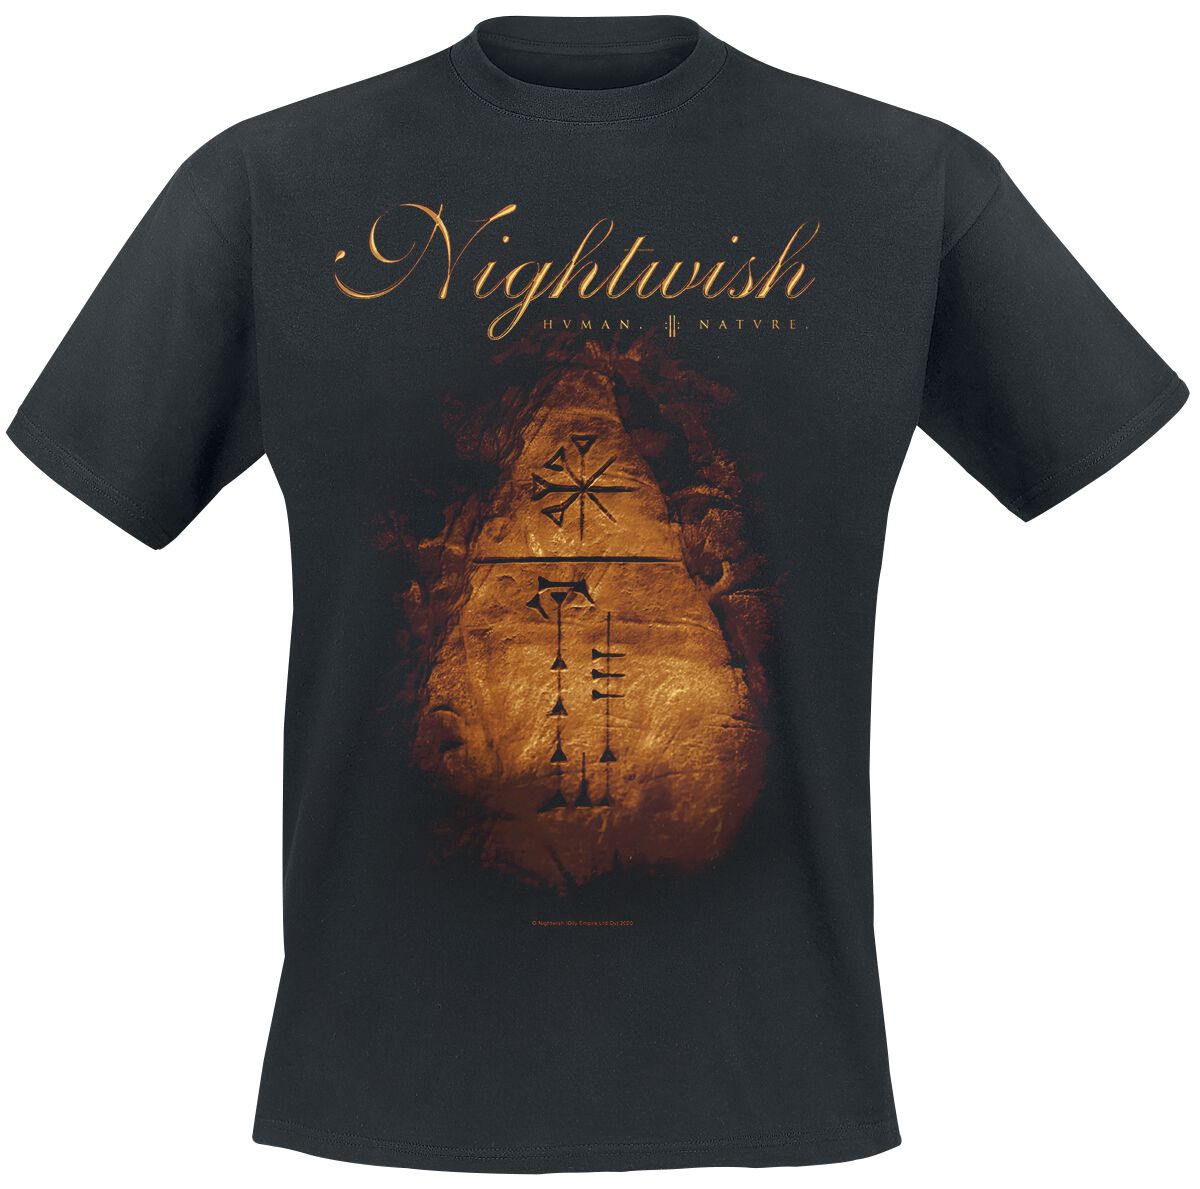 Nightwish T-Shirt - Human. :||: Nature. - S bis XXL - für Männer - Größe XL - schwarz  - EMP exklusives Merchandise!